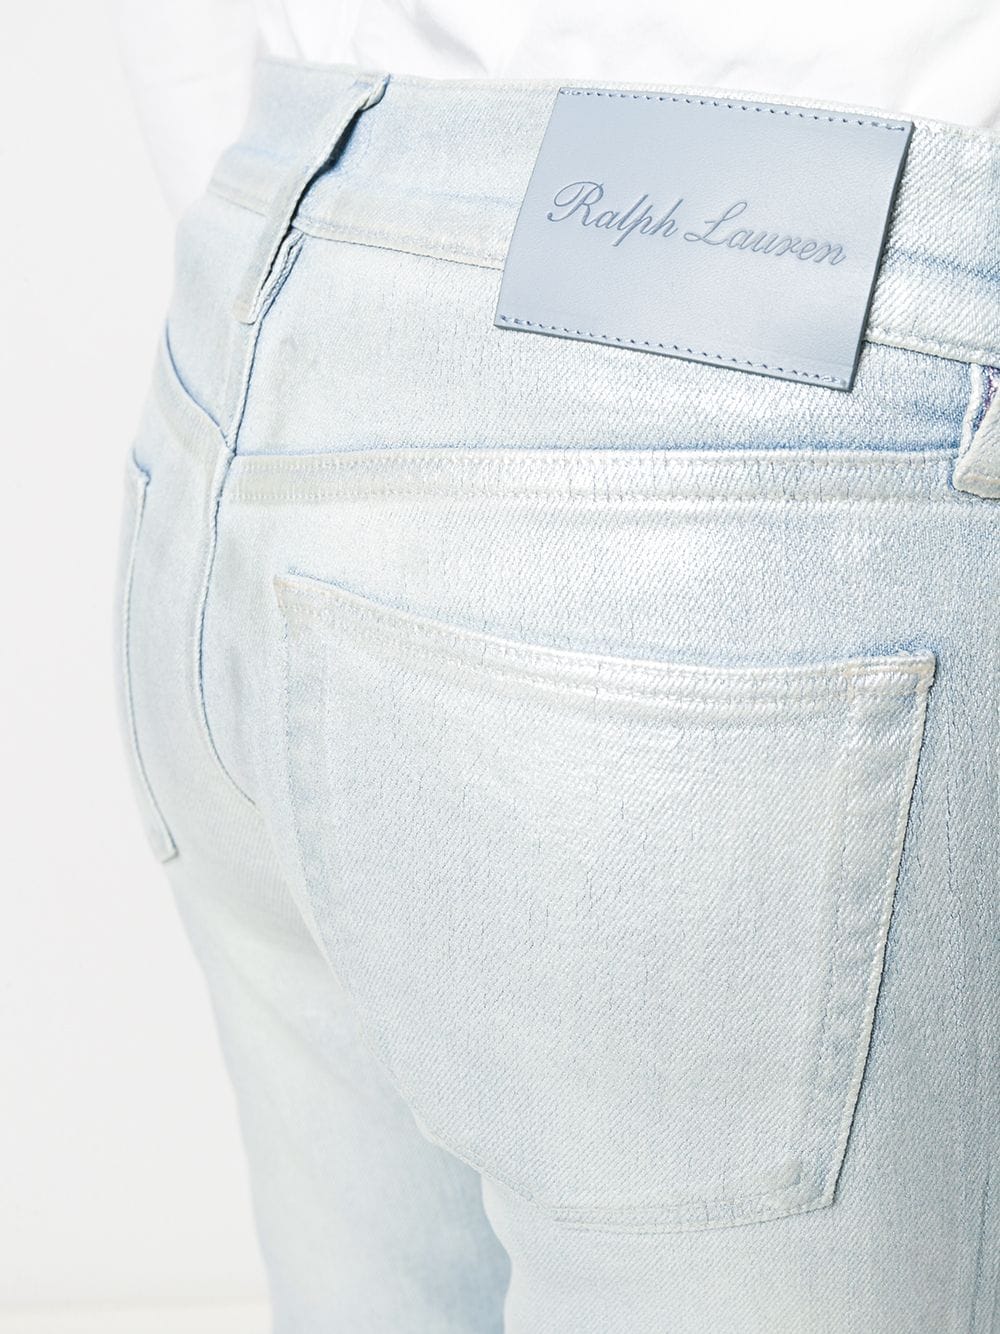 фото Ralph lauren collection джинсы с эффектом металлик